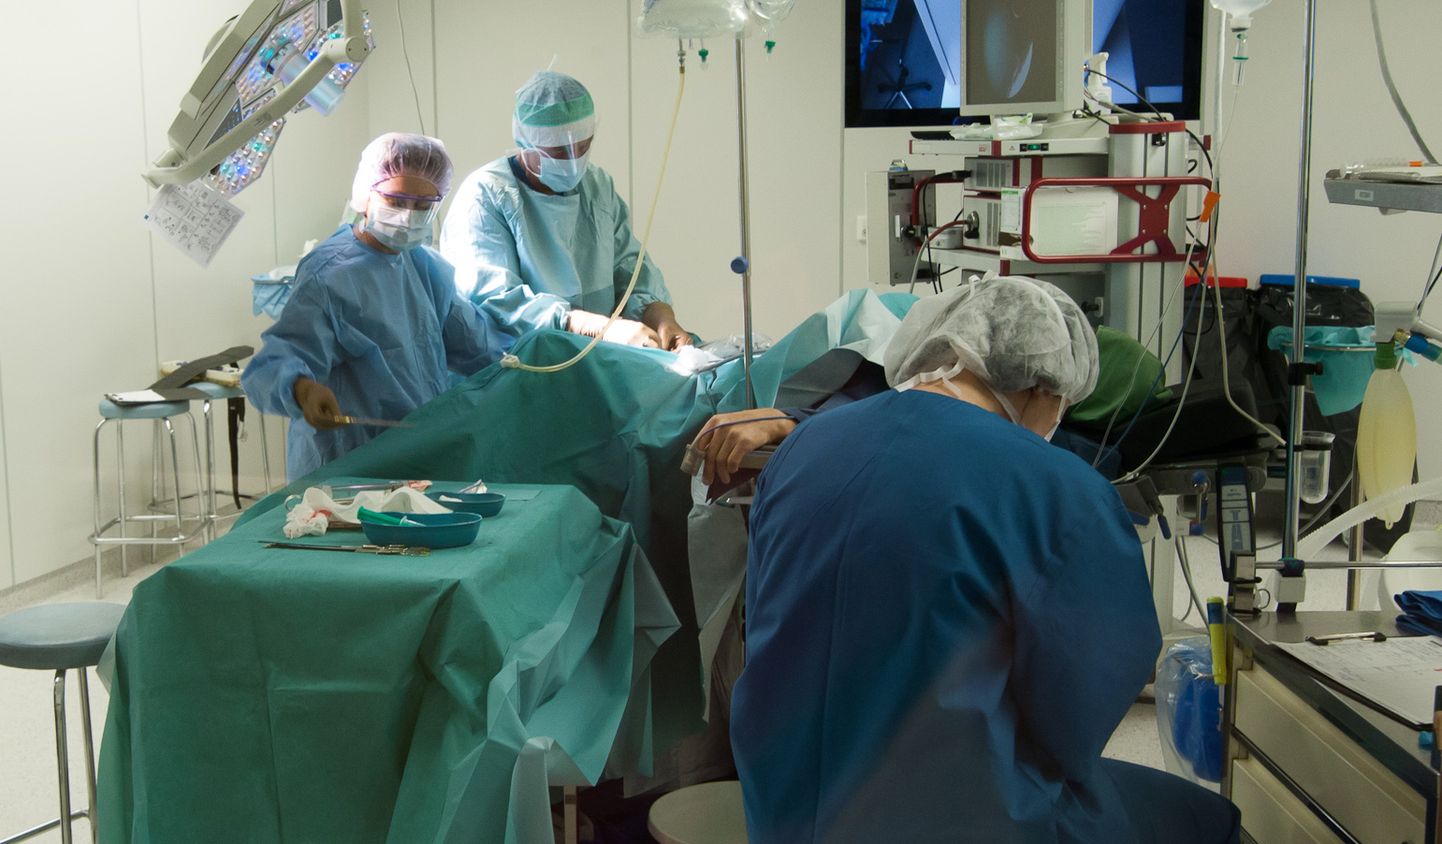 Ida-Viru keskhaigla kirurgiakliinik töötab lisakoormusega, kuna siia tulevad ka Narva patsiendid, sest sealse haigla kirurgiaosakonna töö on koroonaviiruse tõttu suuremas osas peatatud.